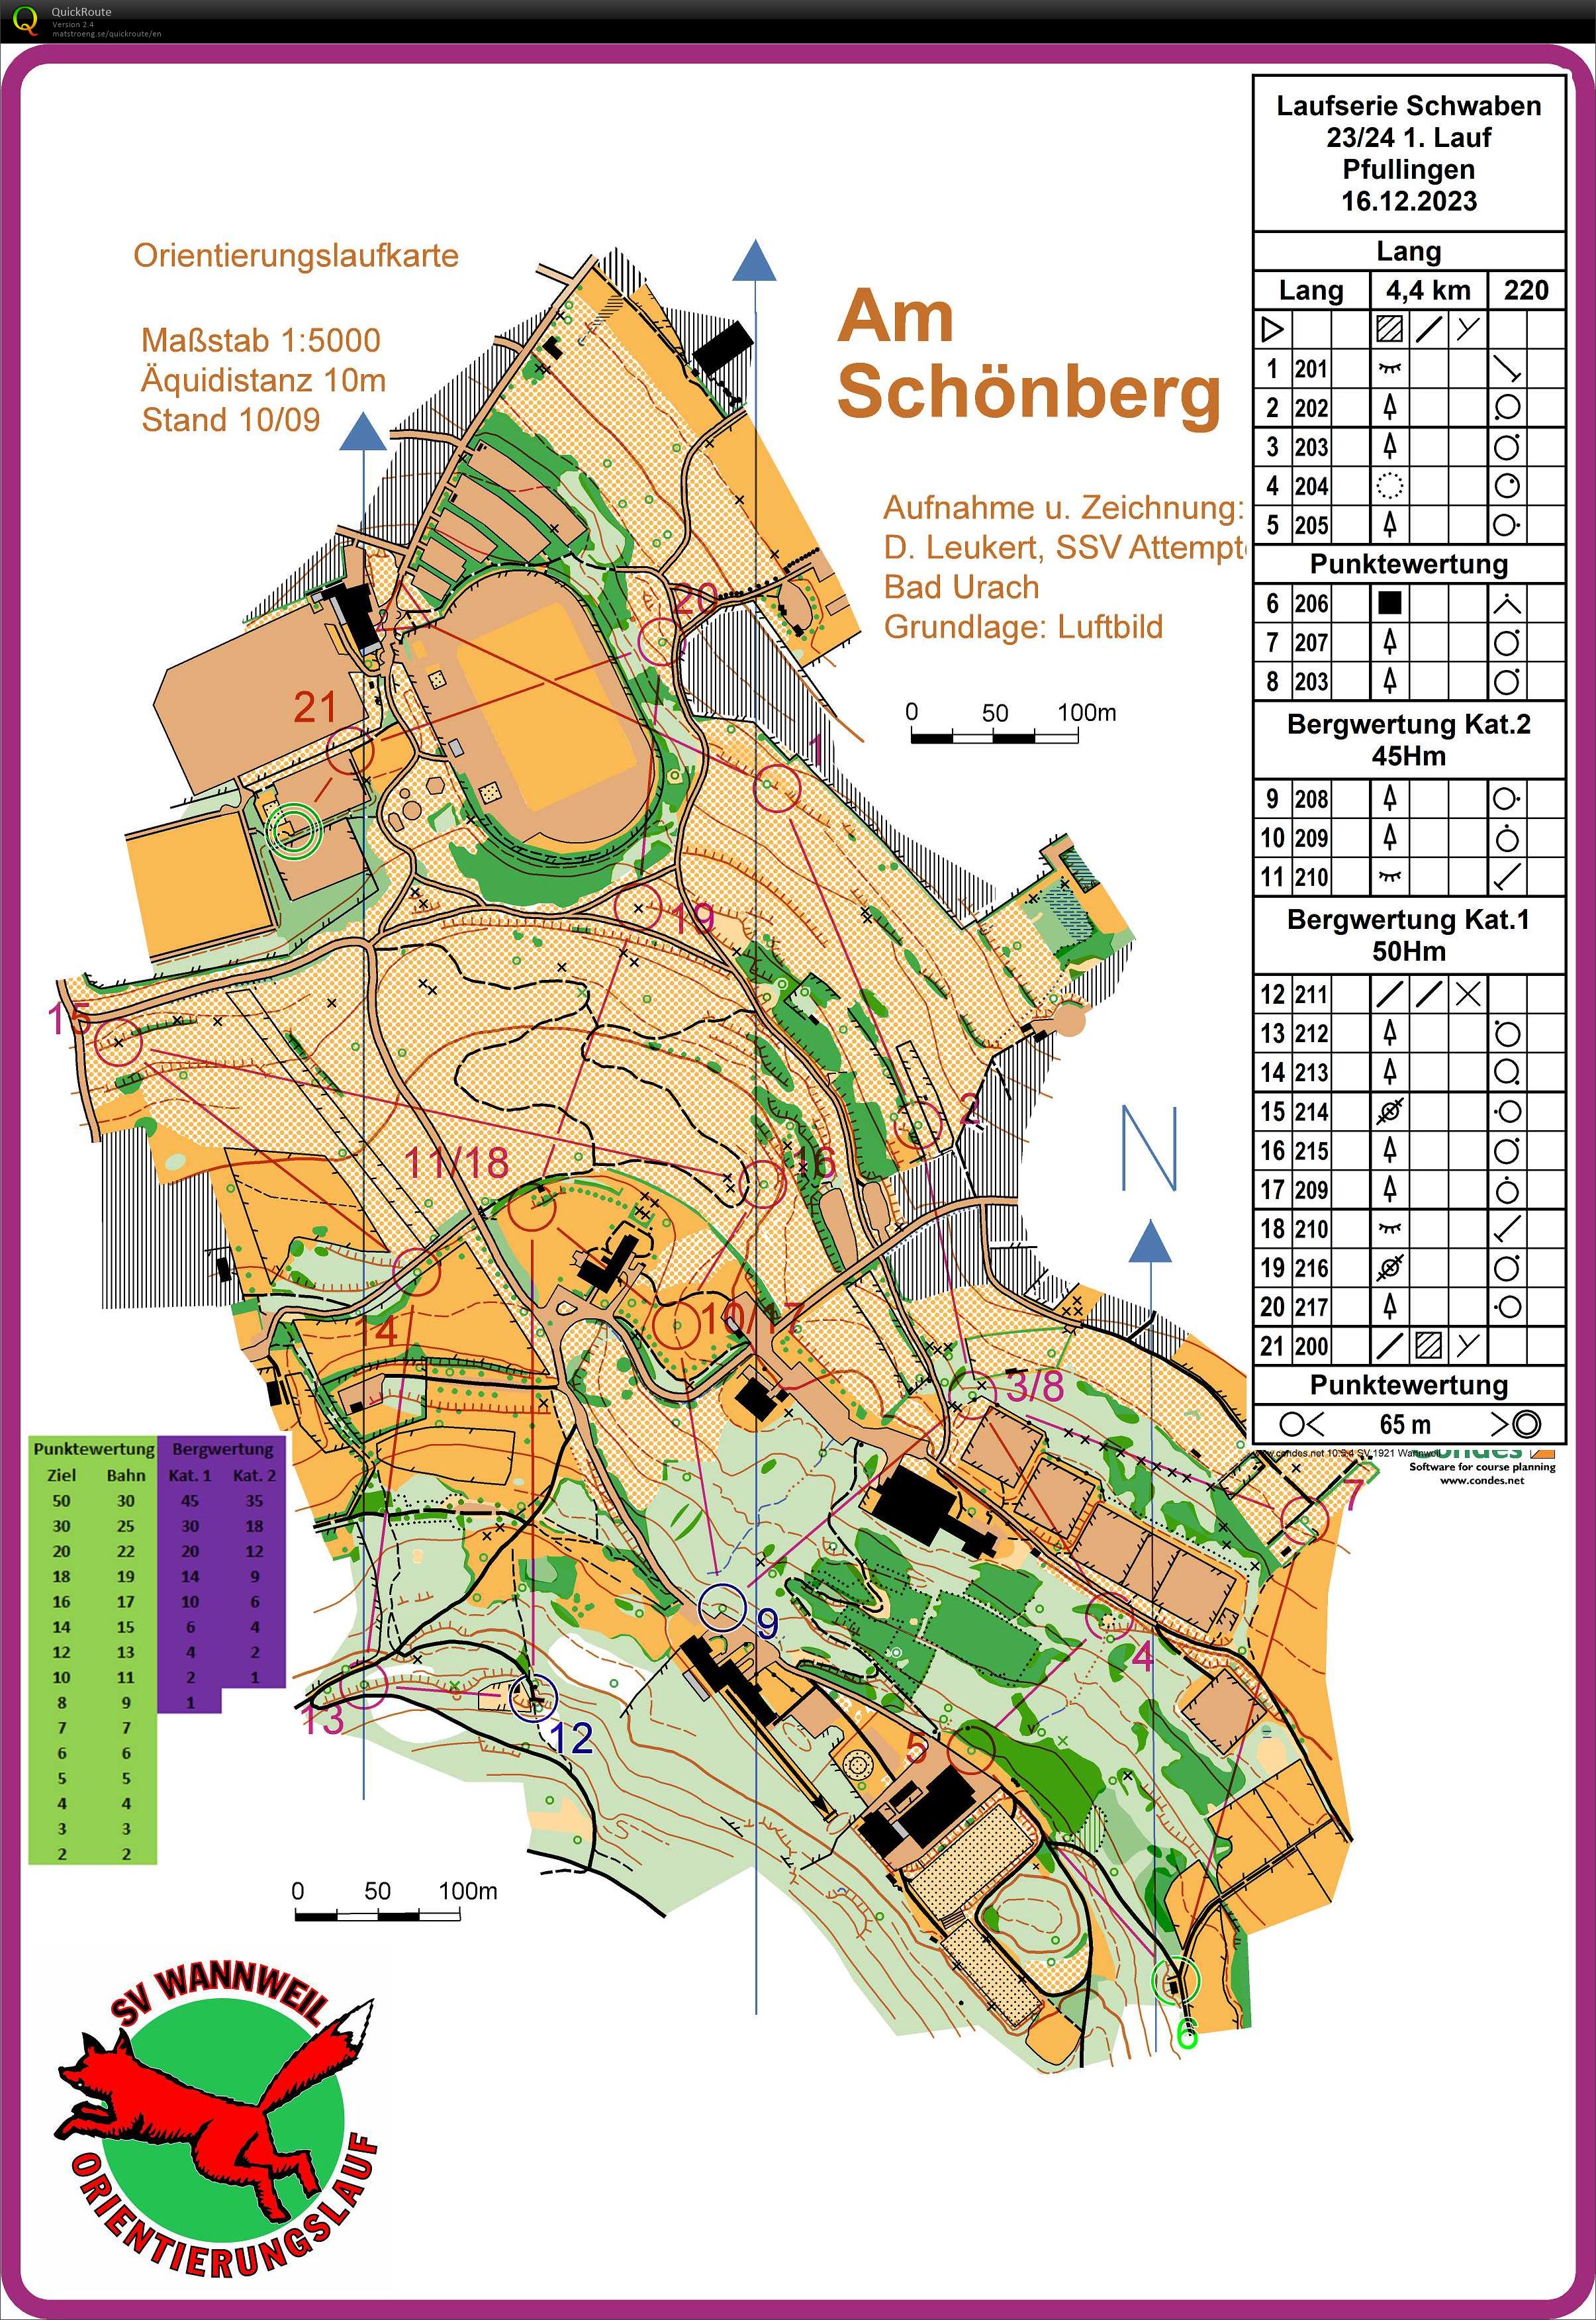 Laufserie Schwaben 23/24 1. Round Pfullingen (16-12-2023)